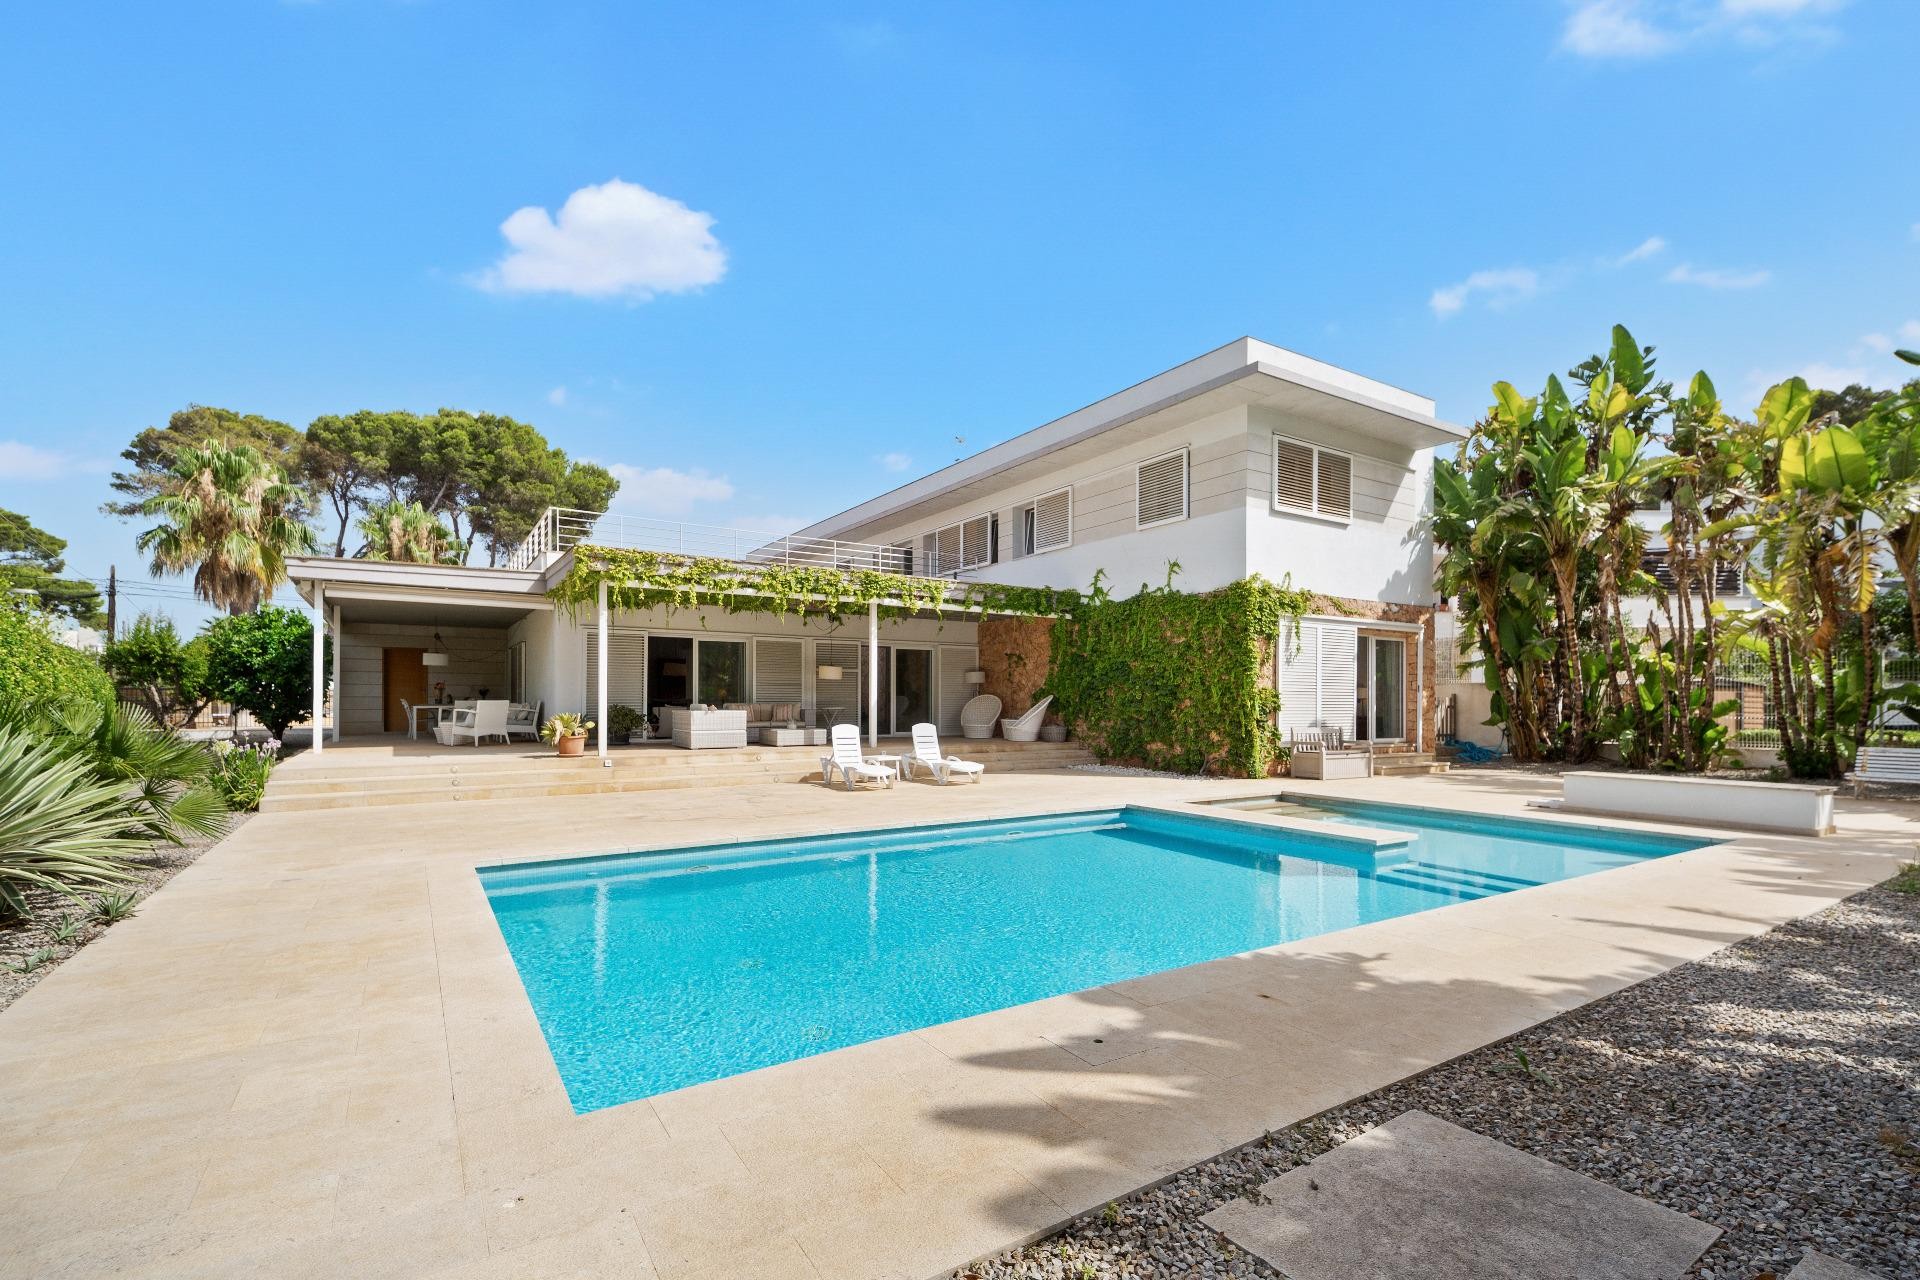 Excelente villa moderna llena de luz con terrazas y gran piscina cerca de la playa de Palma